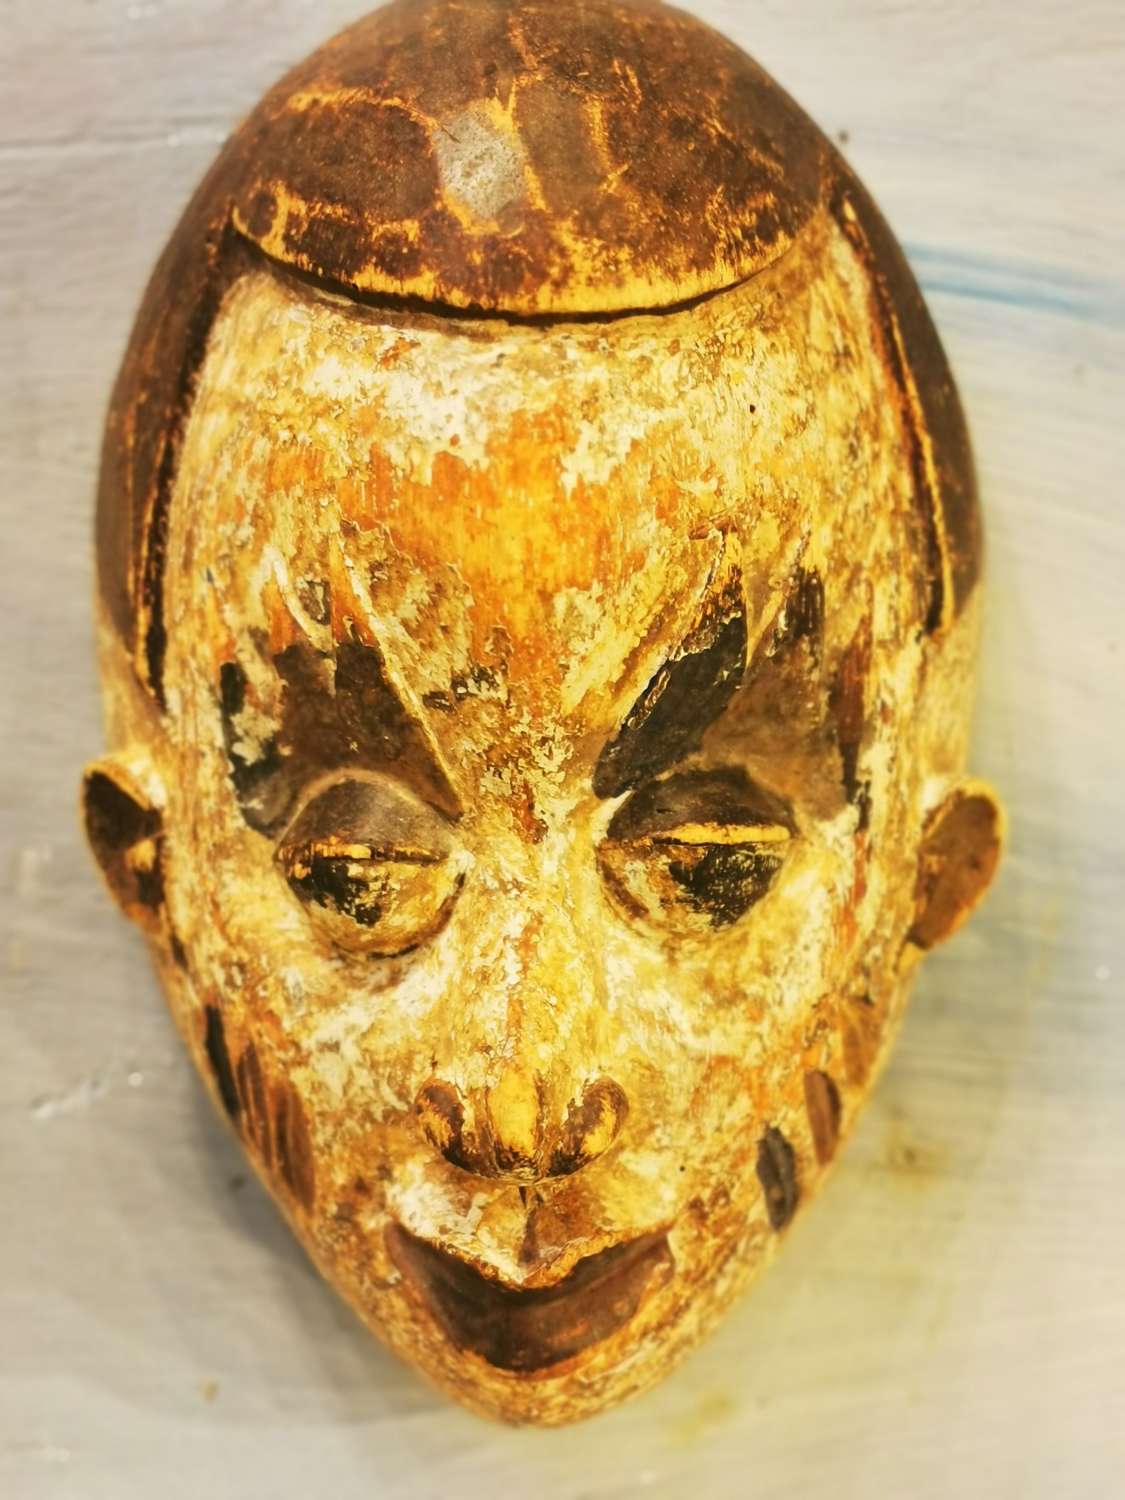 Carved wood mask